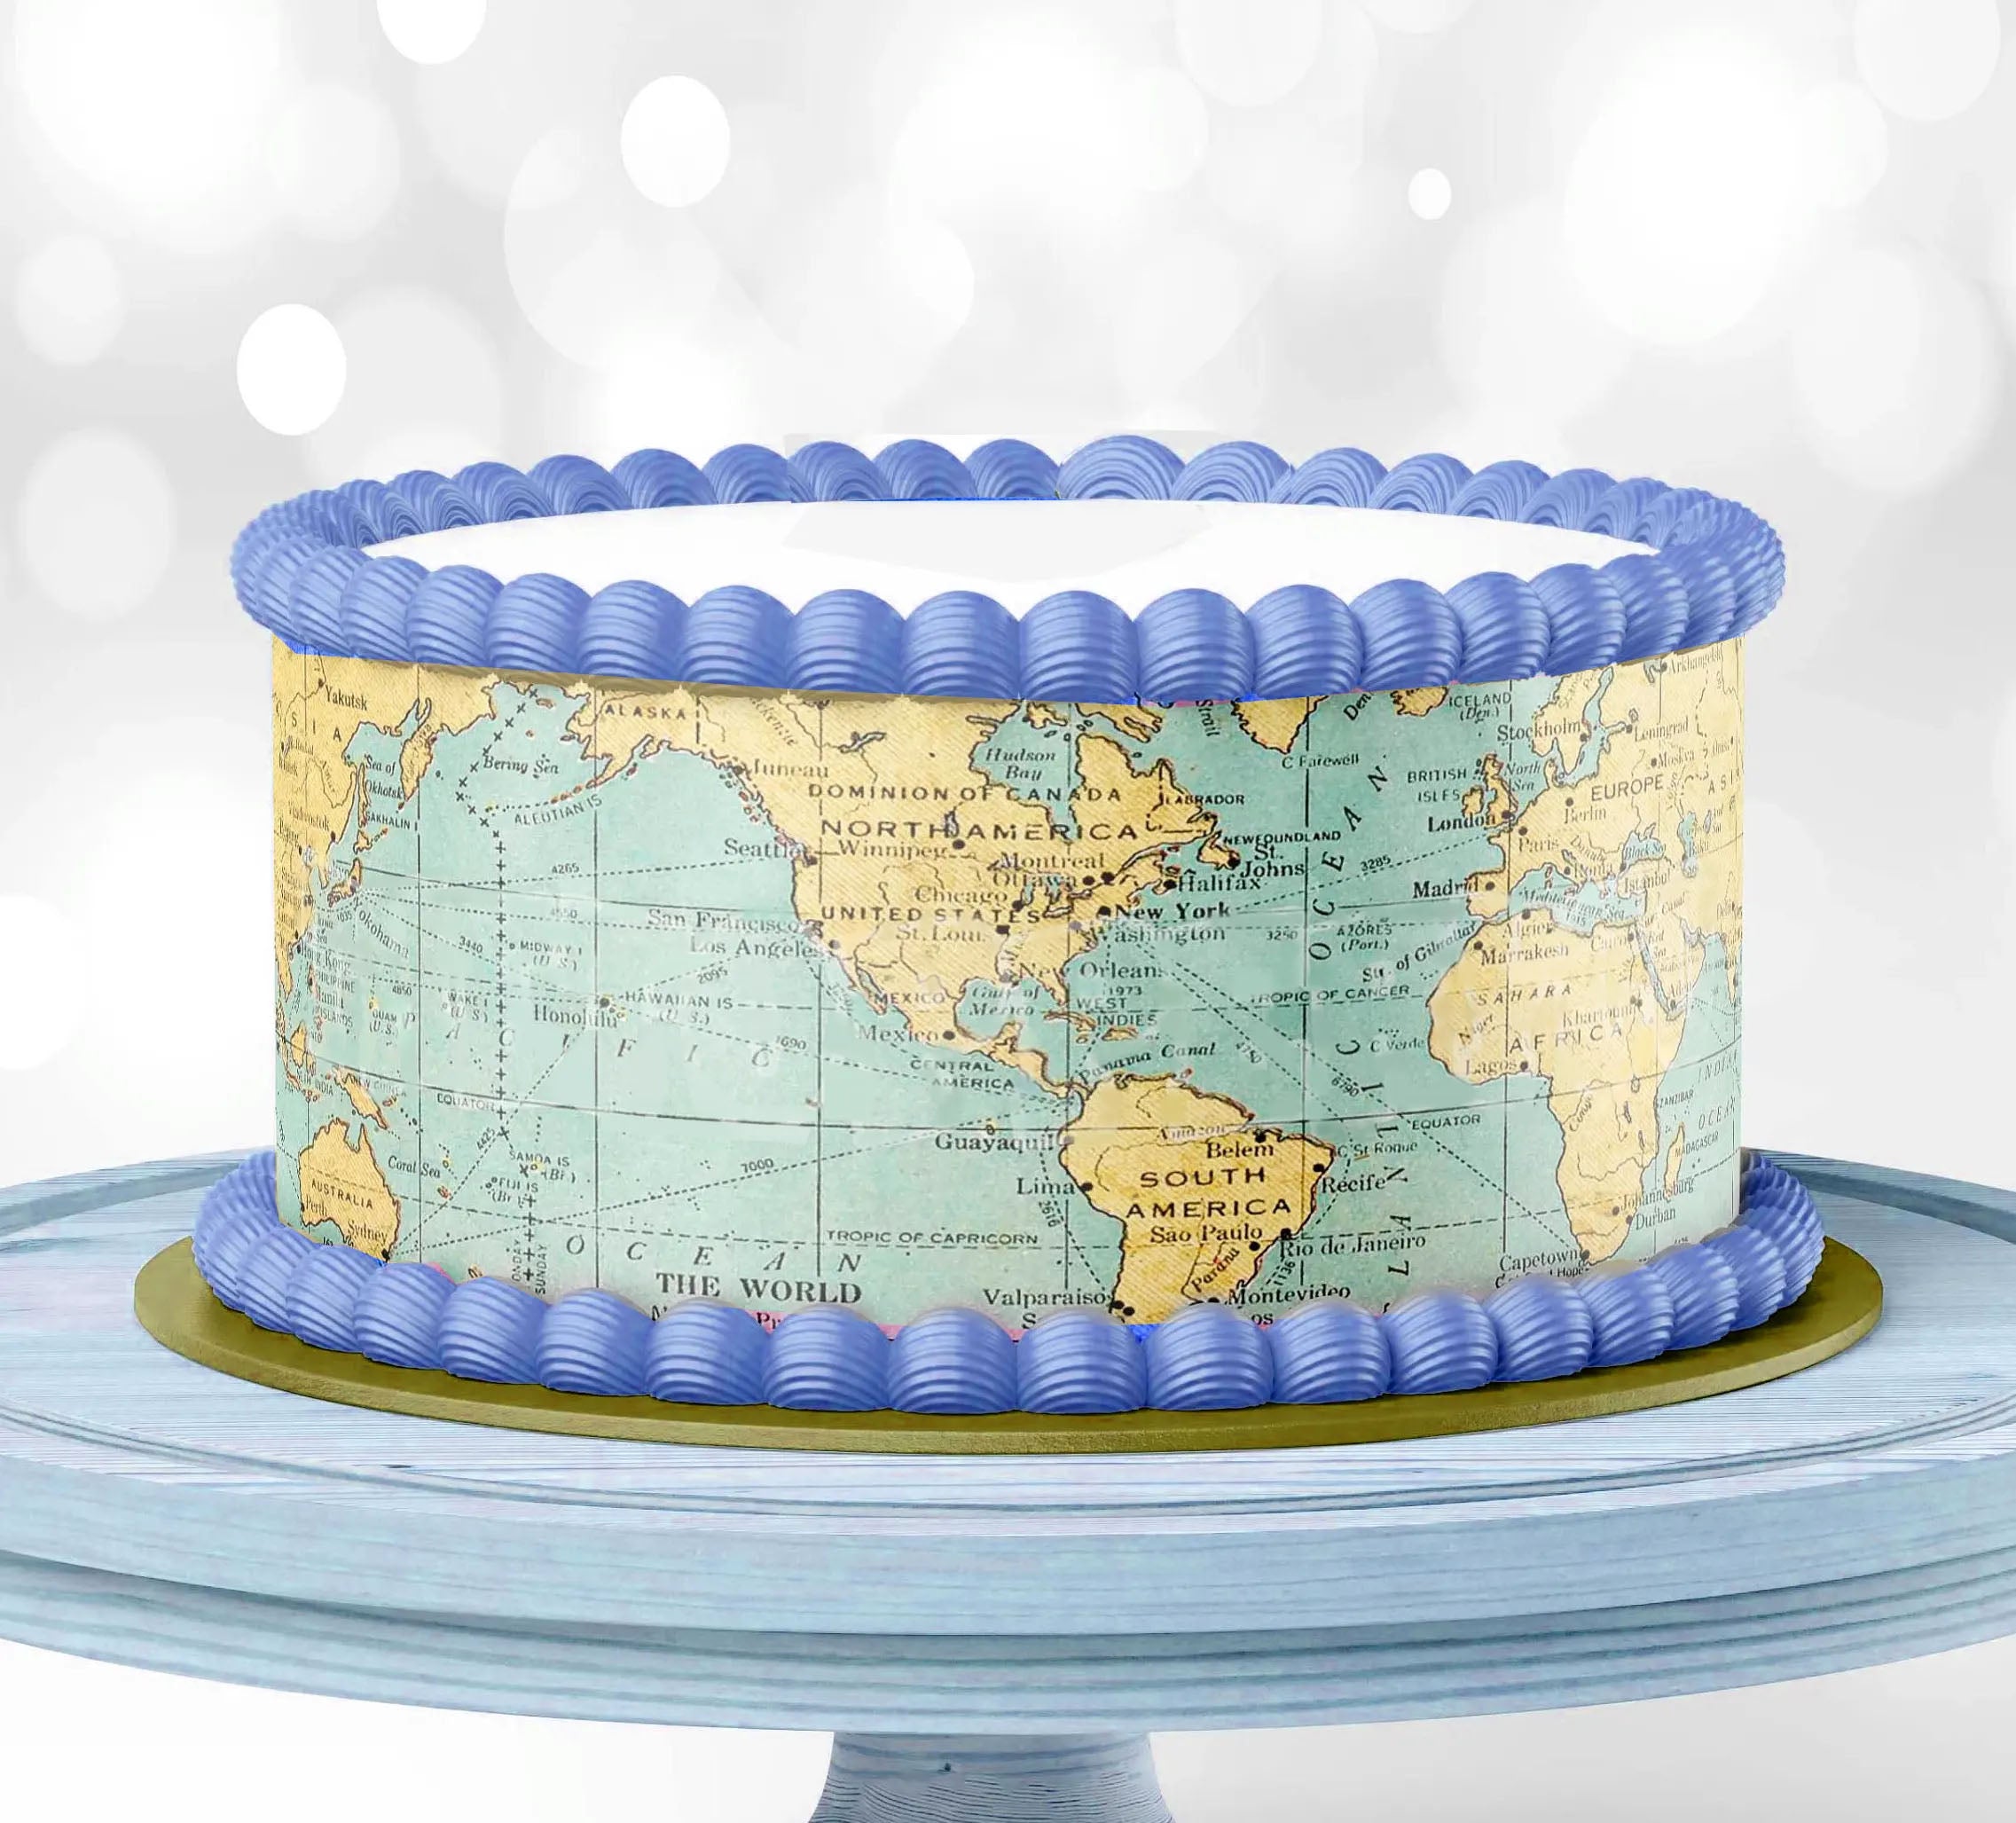 WORLD SERIES CAKE — Batter Up Bakery